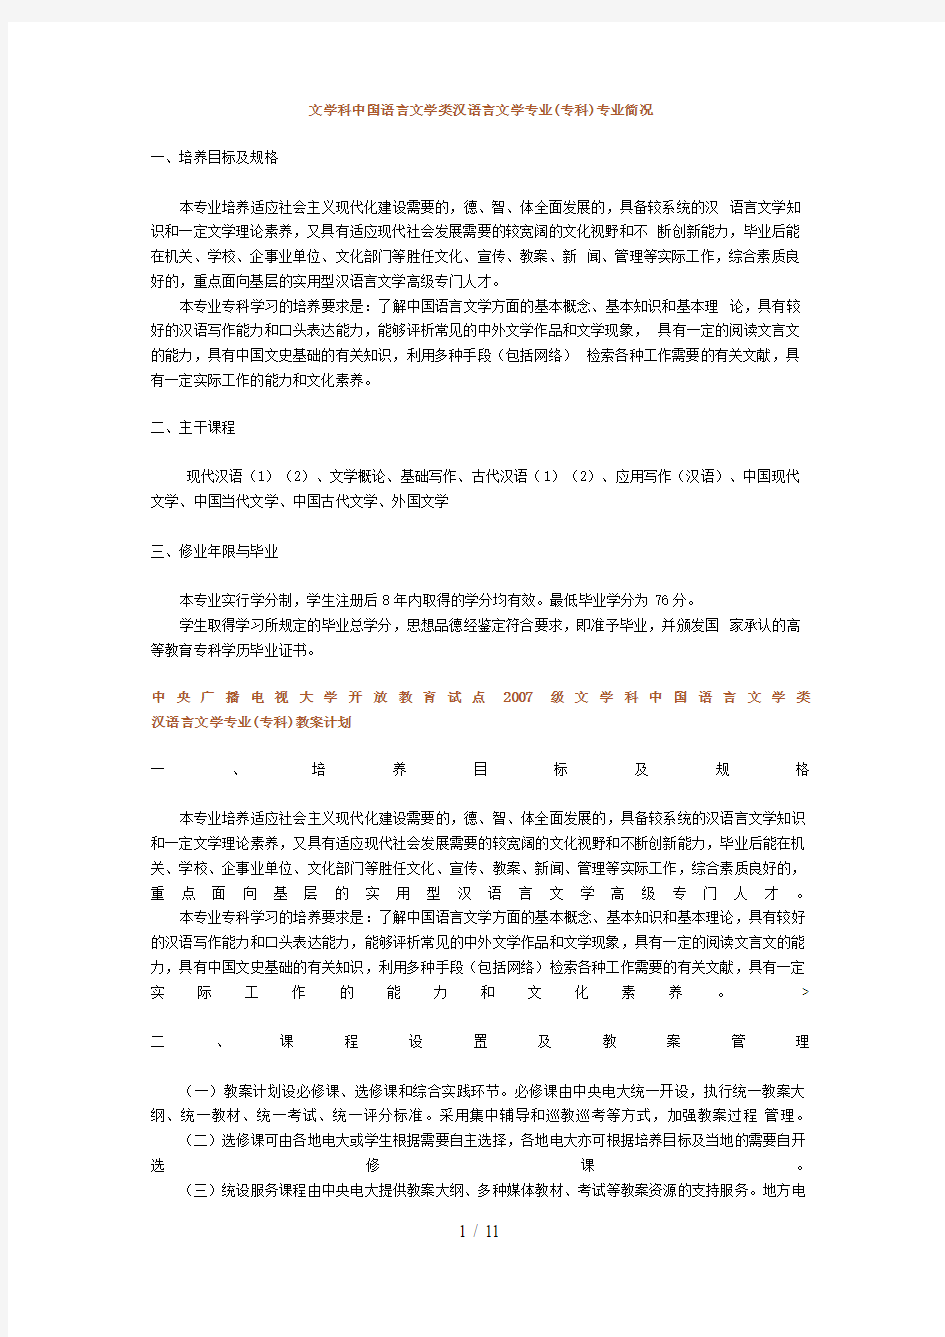 文学科中国语言文学类汉语言文学专业(专科)专业概况